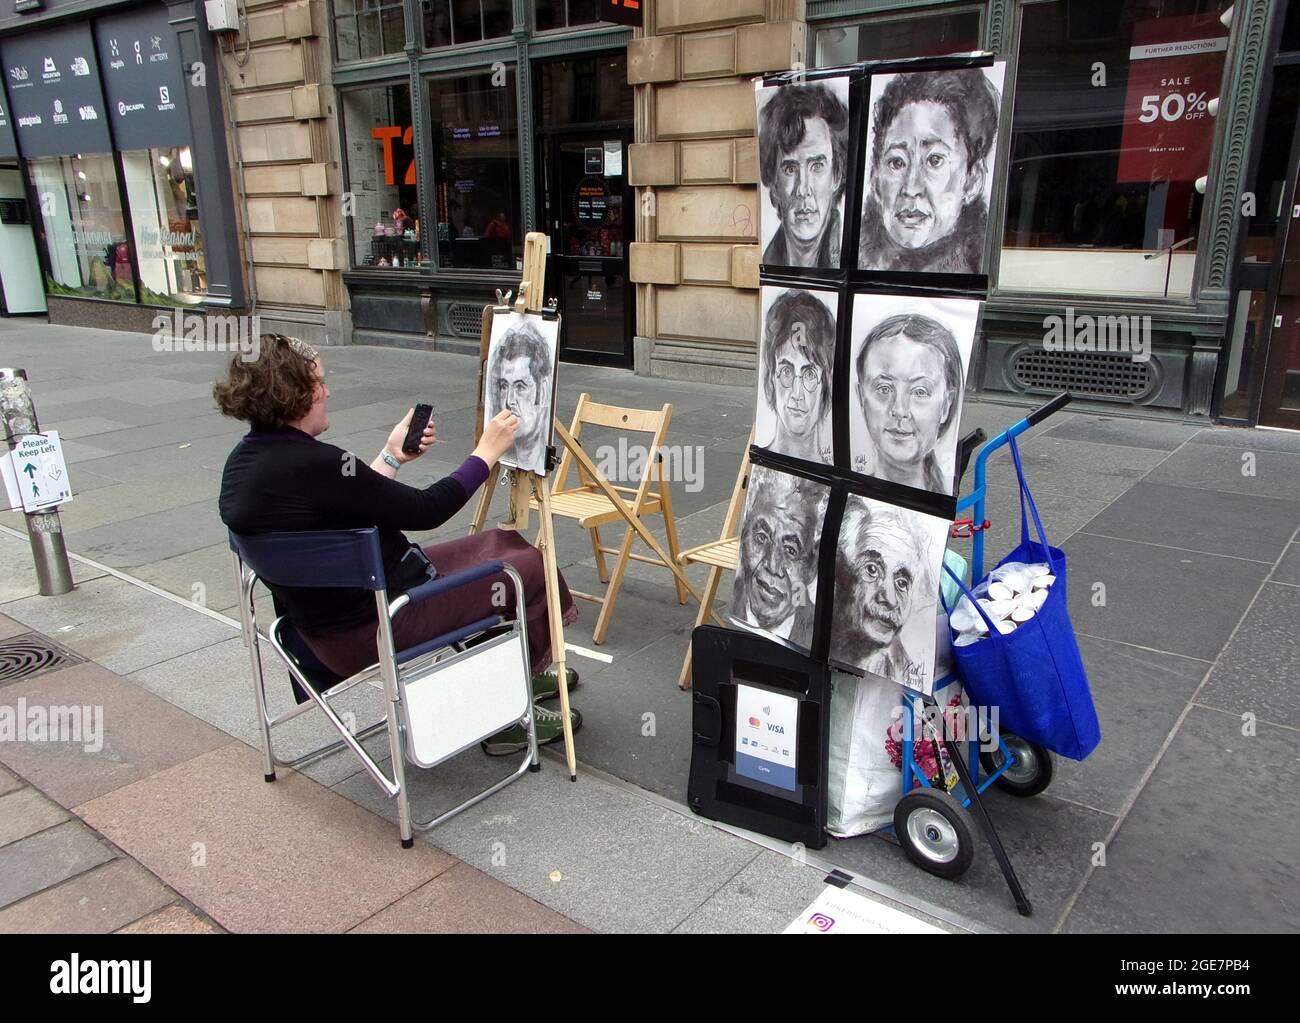 Une artiste de rue de Buchanan Street à Glasgow, dessine quelques portraits de personnes bien connues pour encourager les membres du public à s'asseoir et poser pour elle. Banque D'Images